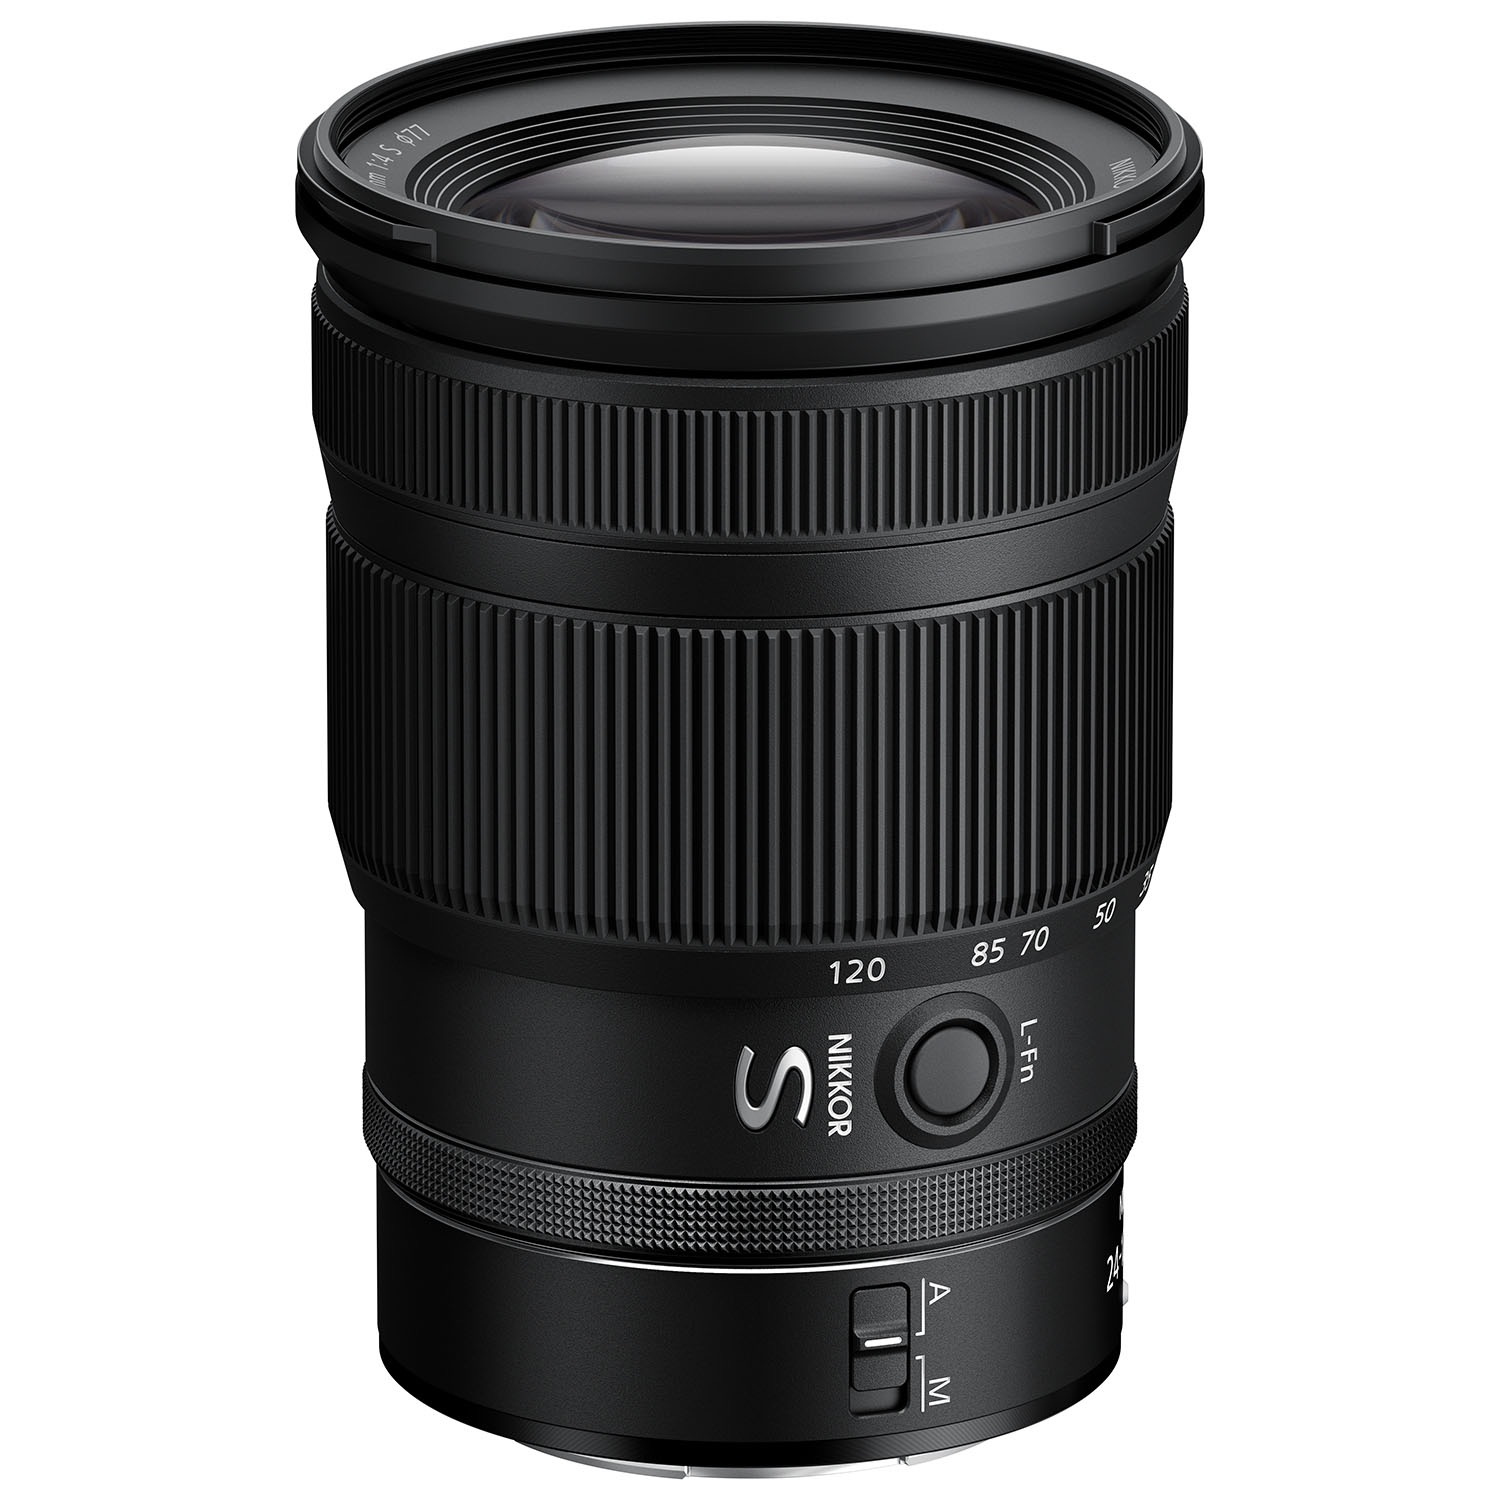 Nikon Z 24-120mm f4 S Lens Main Image